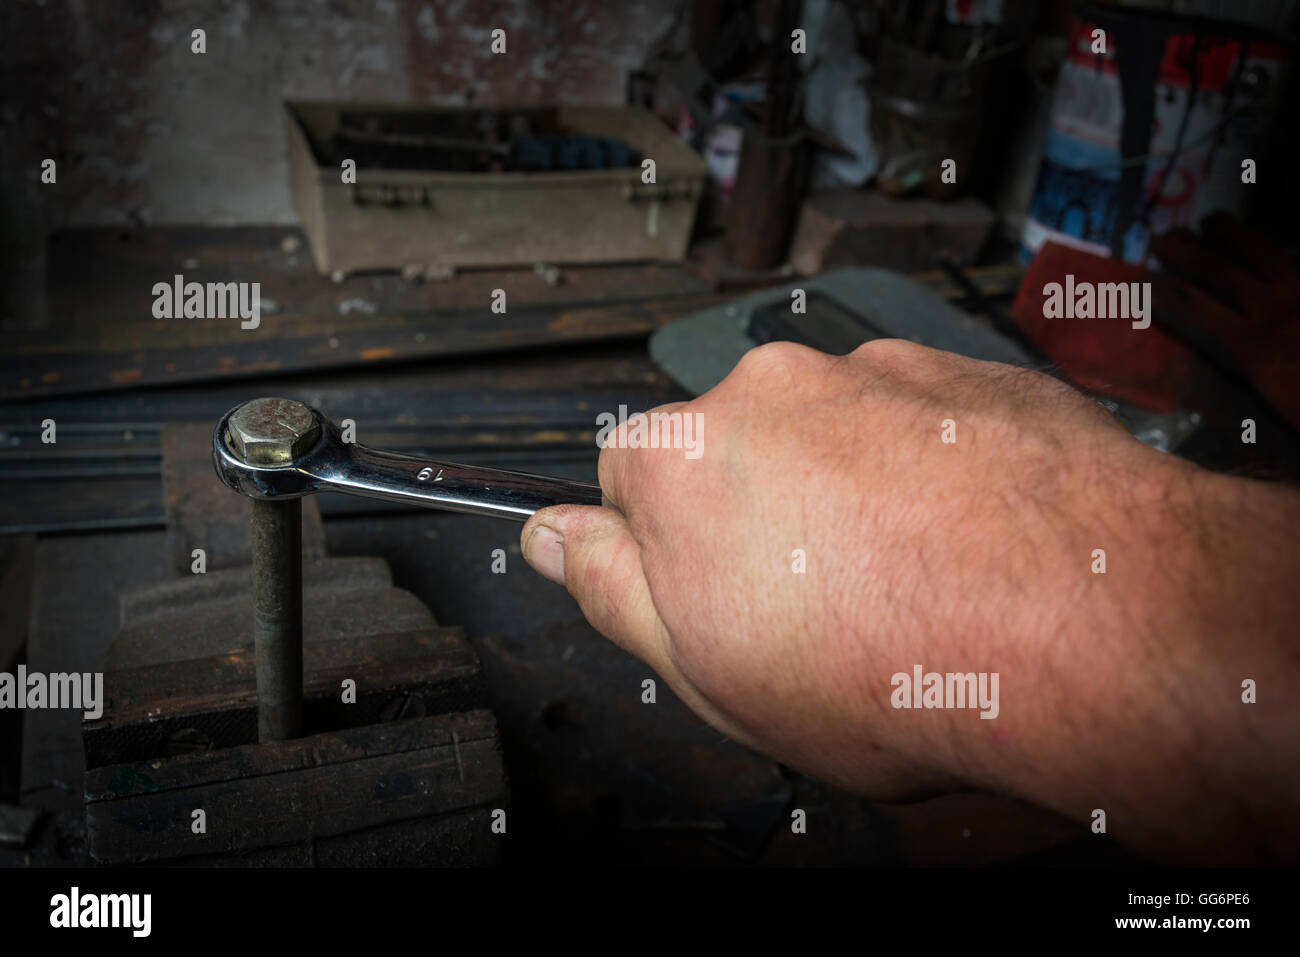 Trabajador mano apretar o aflojar una de un tornillo oxidado con una llave en el viejo Fotografía de Alamy